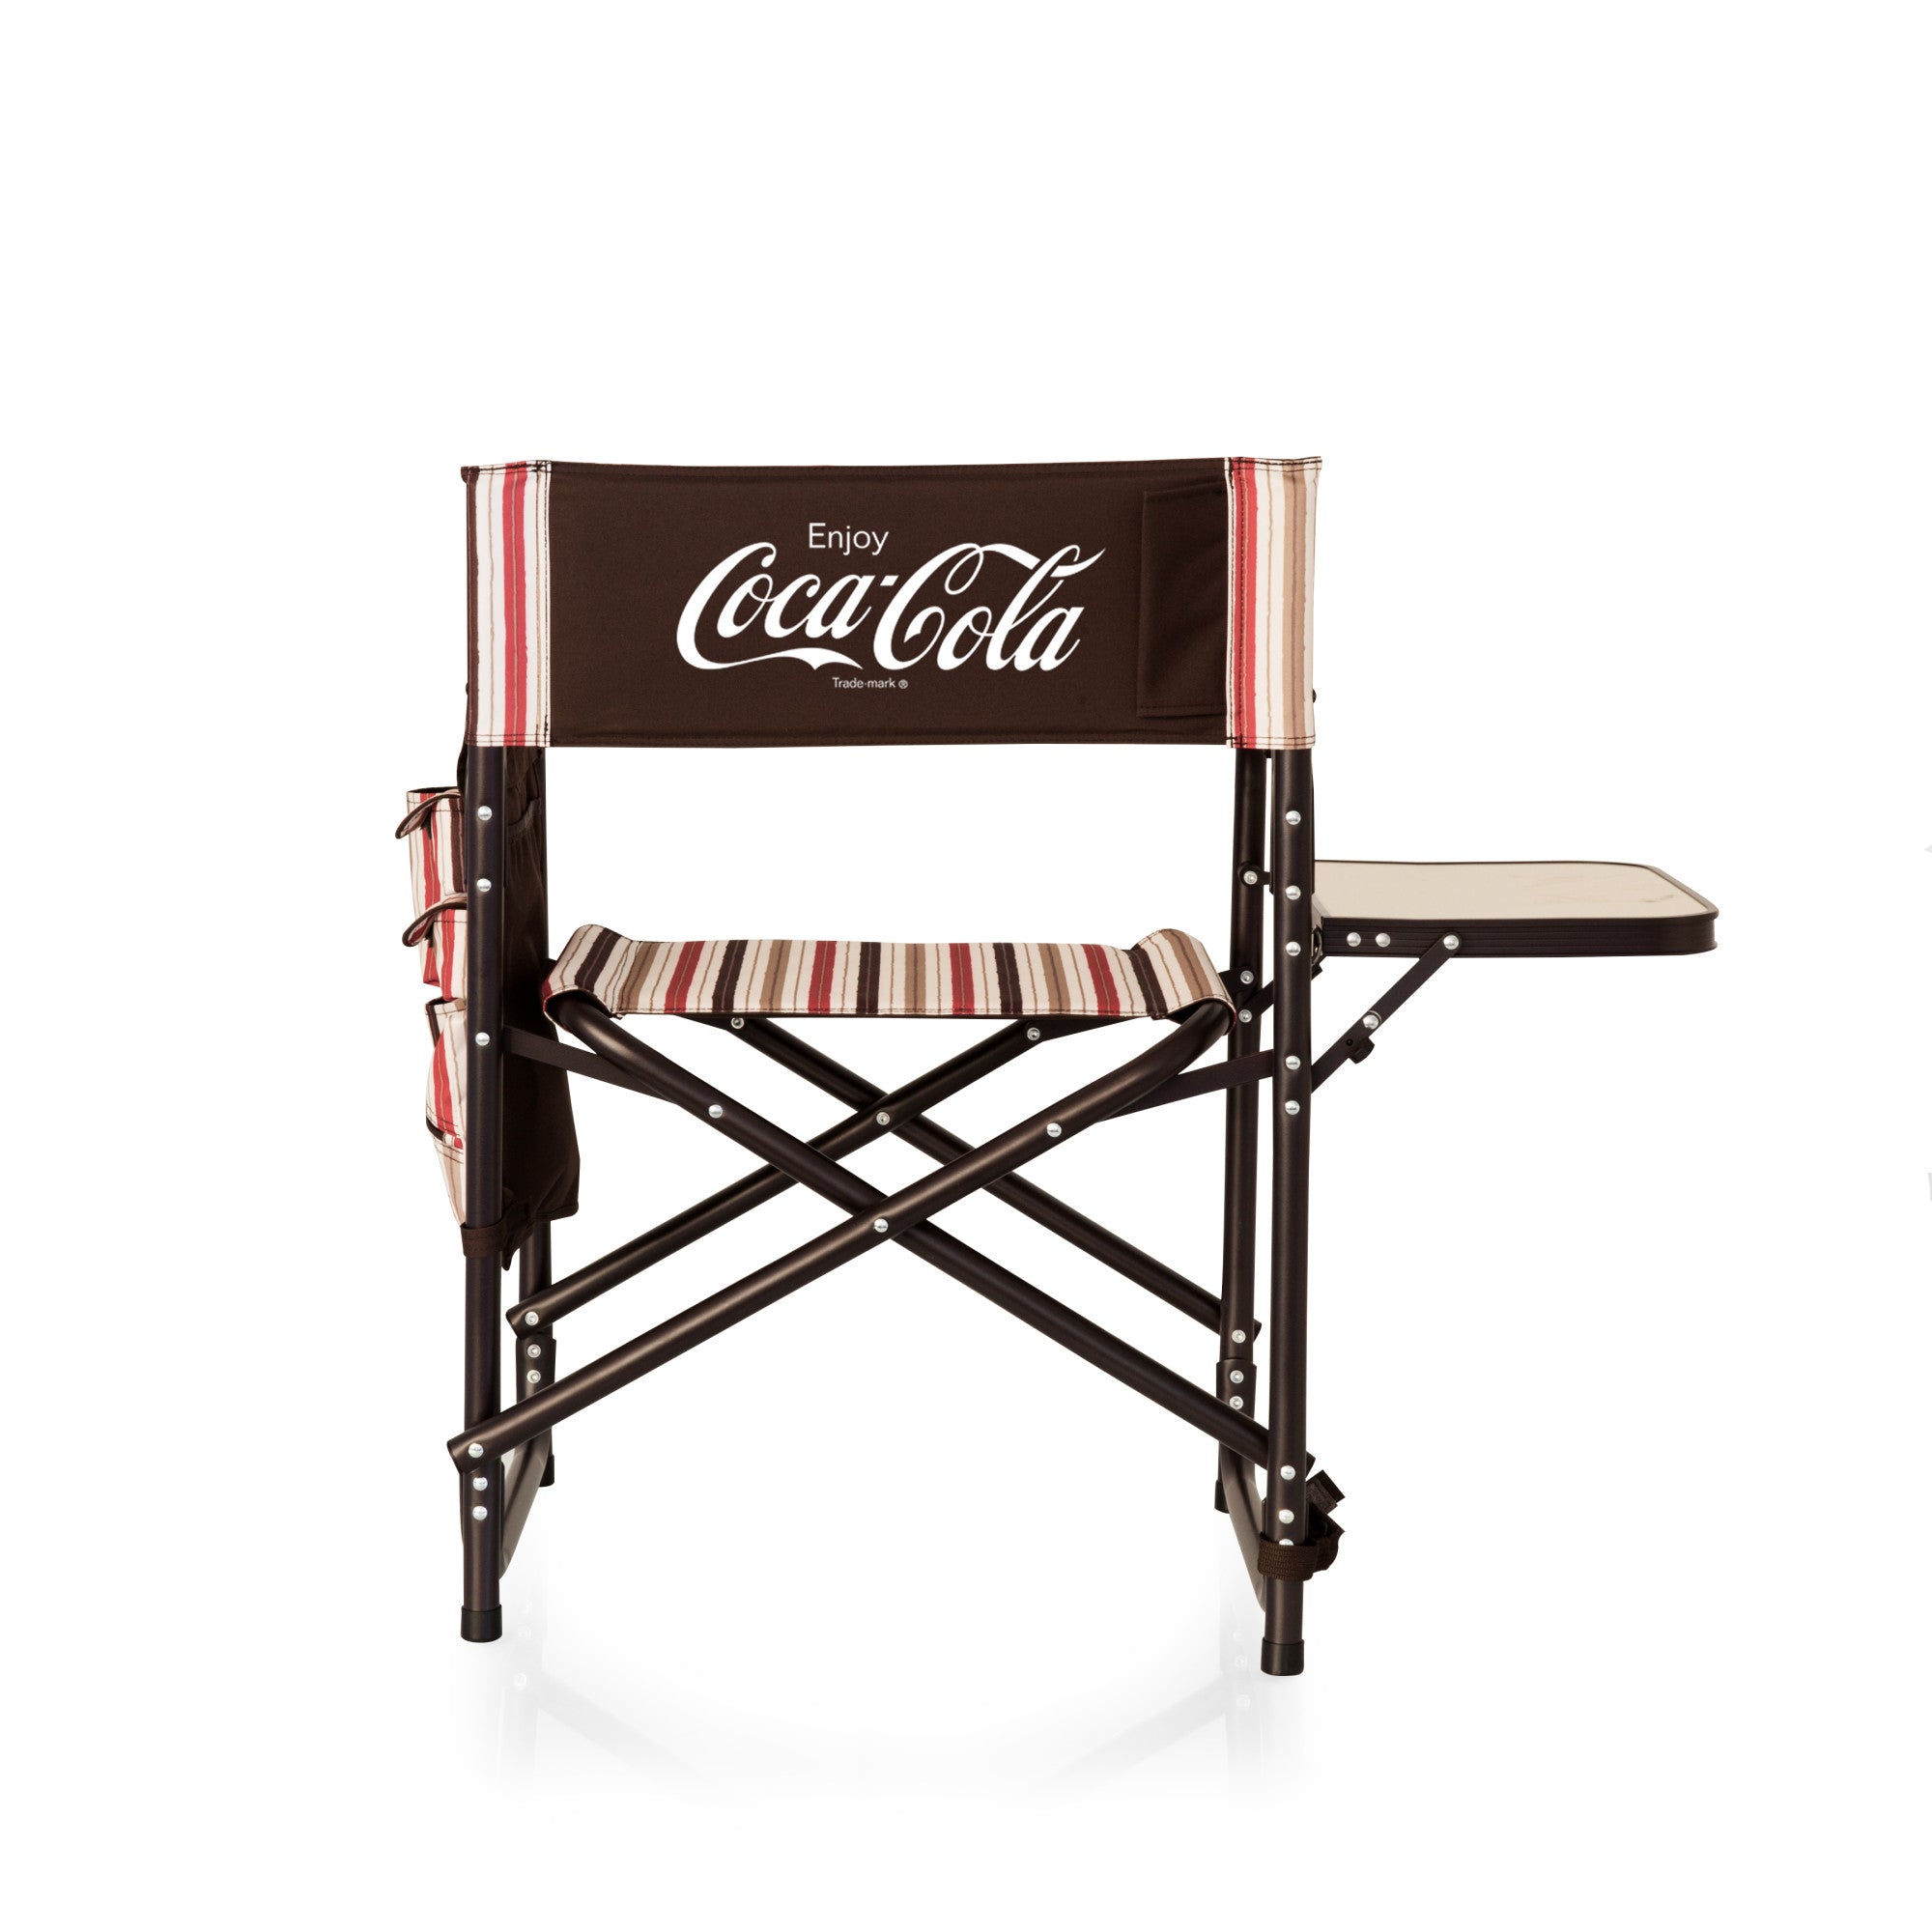 Coca-Cola Enjoy Coke - Sports Chair